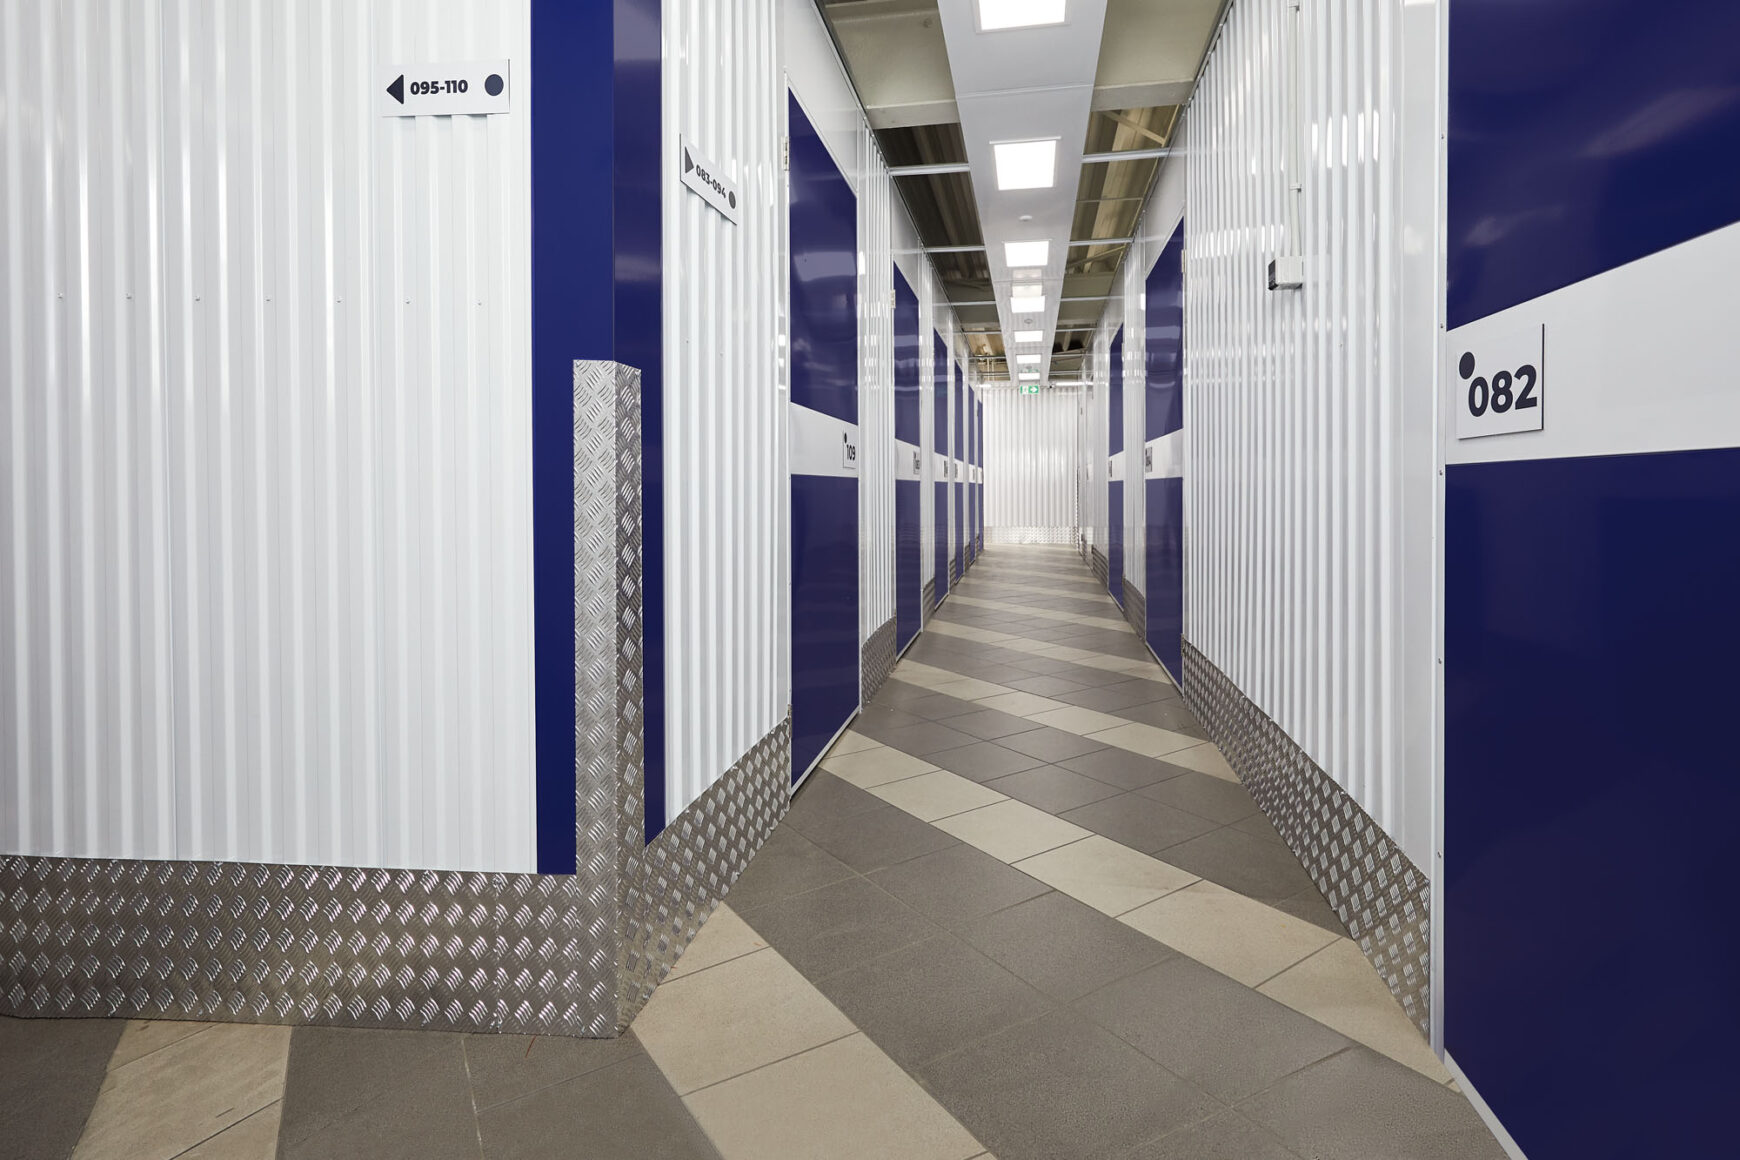 Luna Storage - innenansicht - Lagerraum - Lagercontainer - Lagerfläche